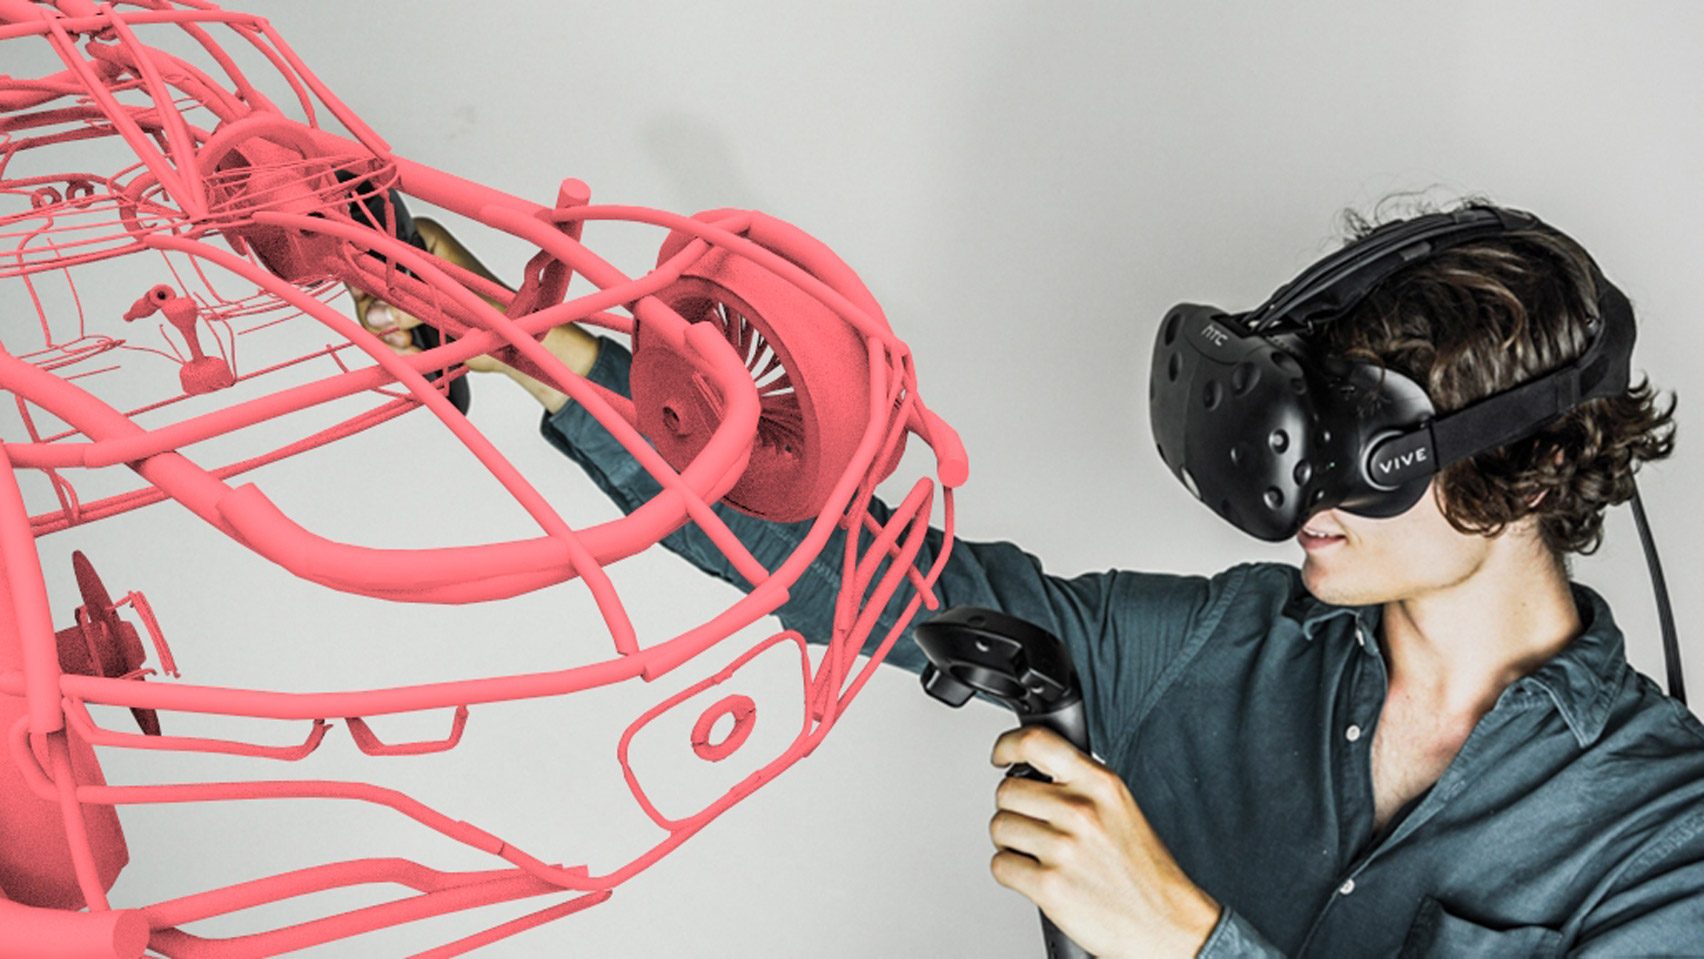 Vr rx. VR/ar и 3d моделированию. Виртуальная реальность 3д моделирование. 3d моделирование в виртуальной реальности. 3d моделирование в VR-очках.